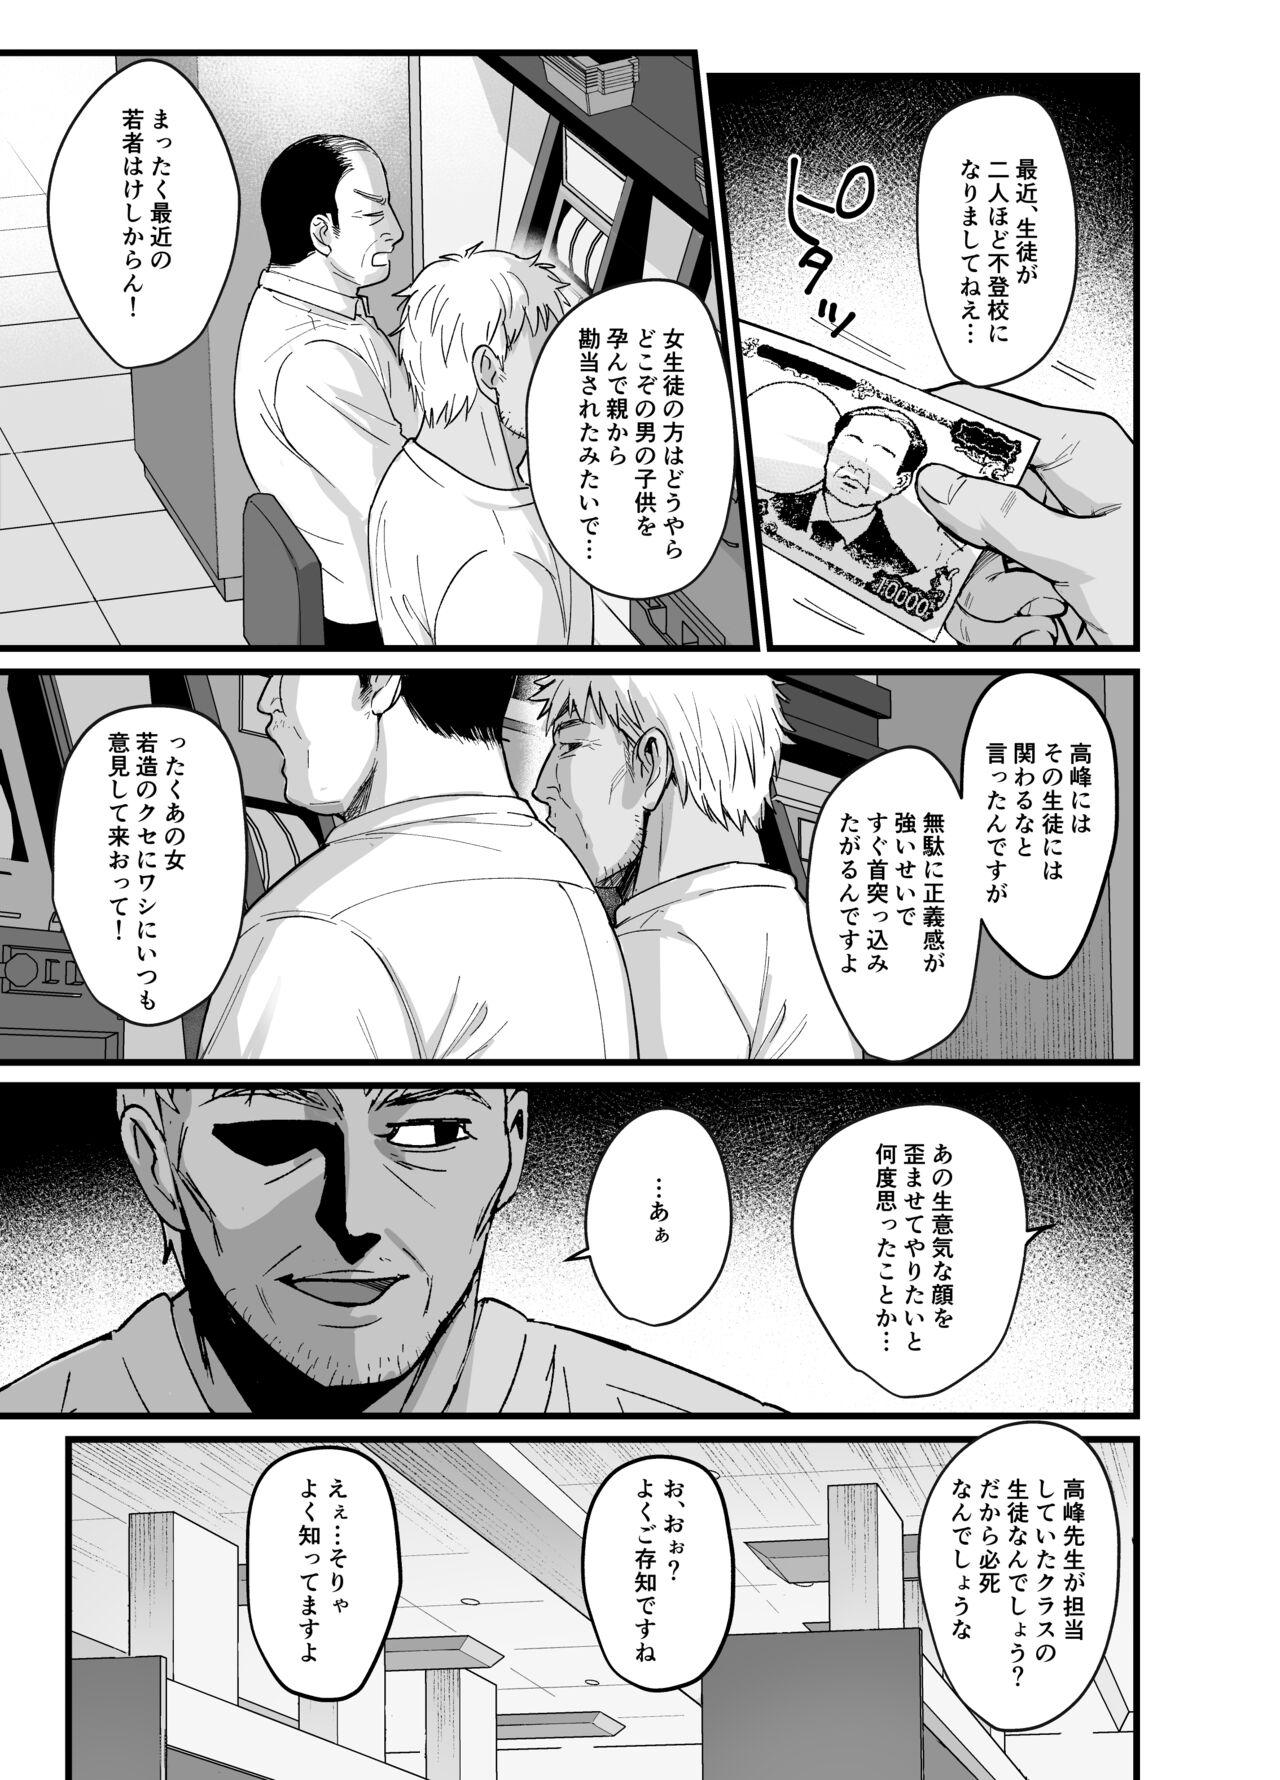 Perverted Toshoshitsu no Kanojo 6 - Original Sluts - Page 4